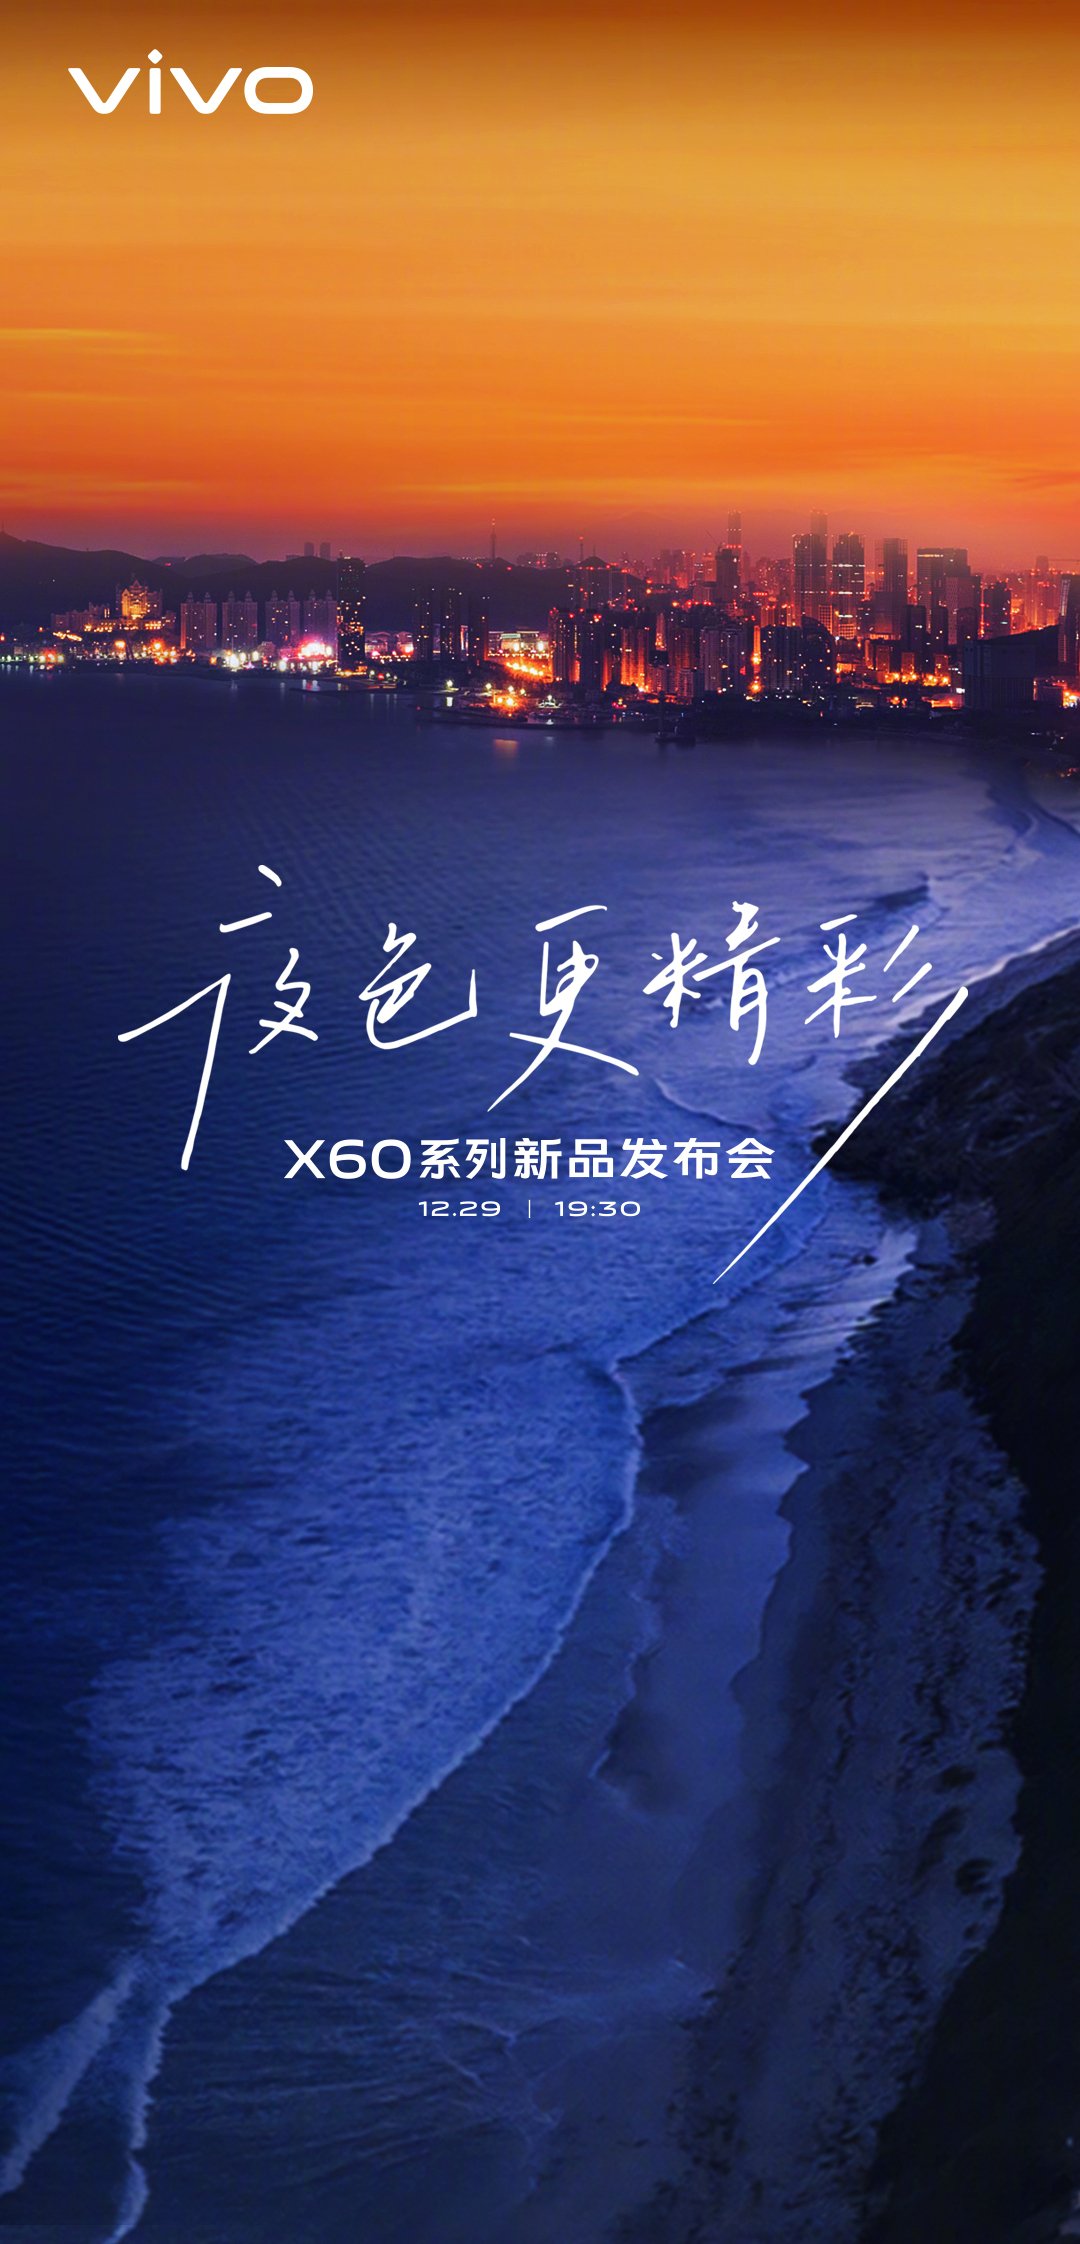 Seria Vivo X60 se lansează pe 29 decembrie, lansat oficial la promoție